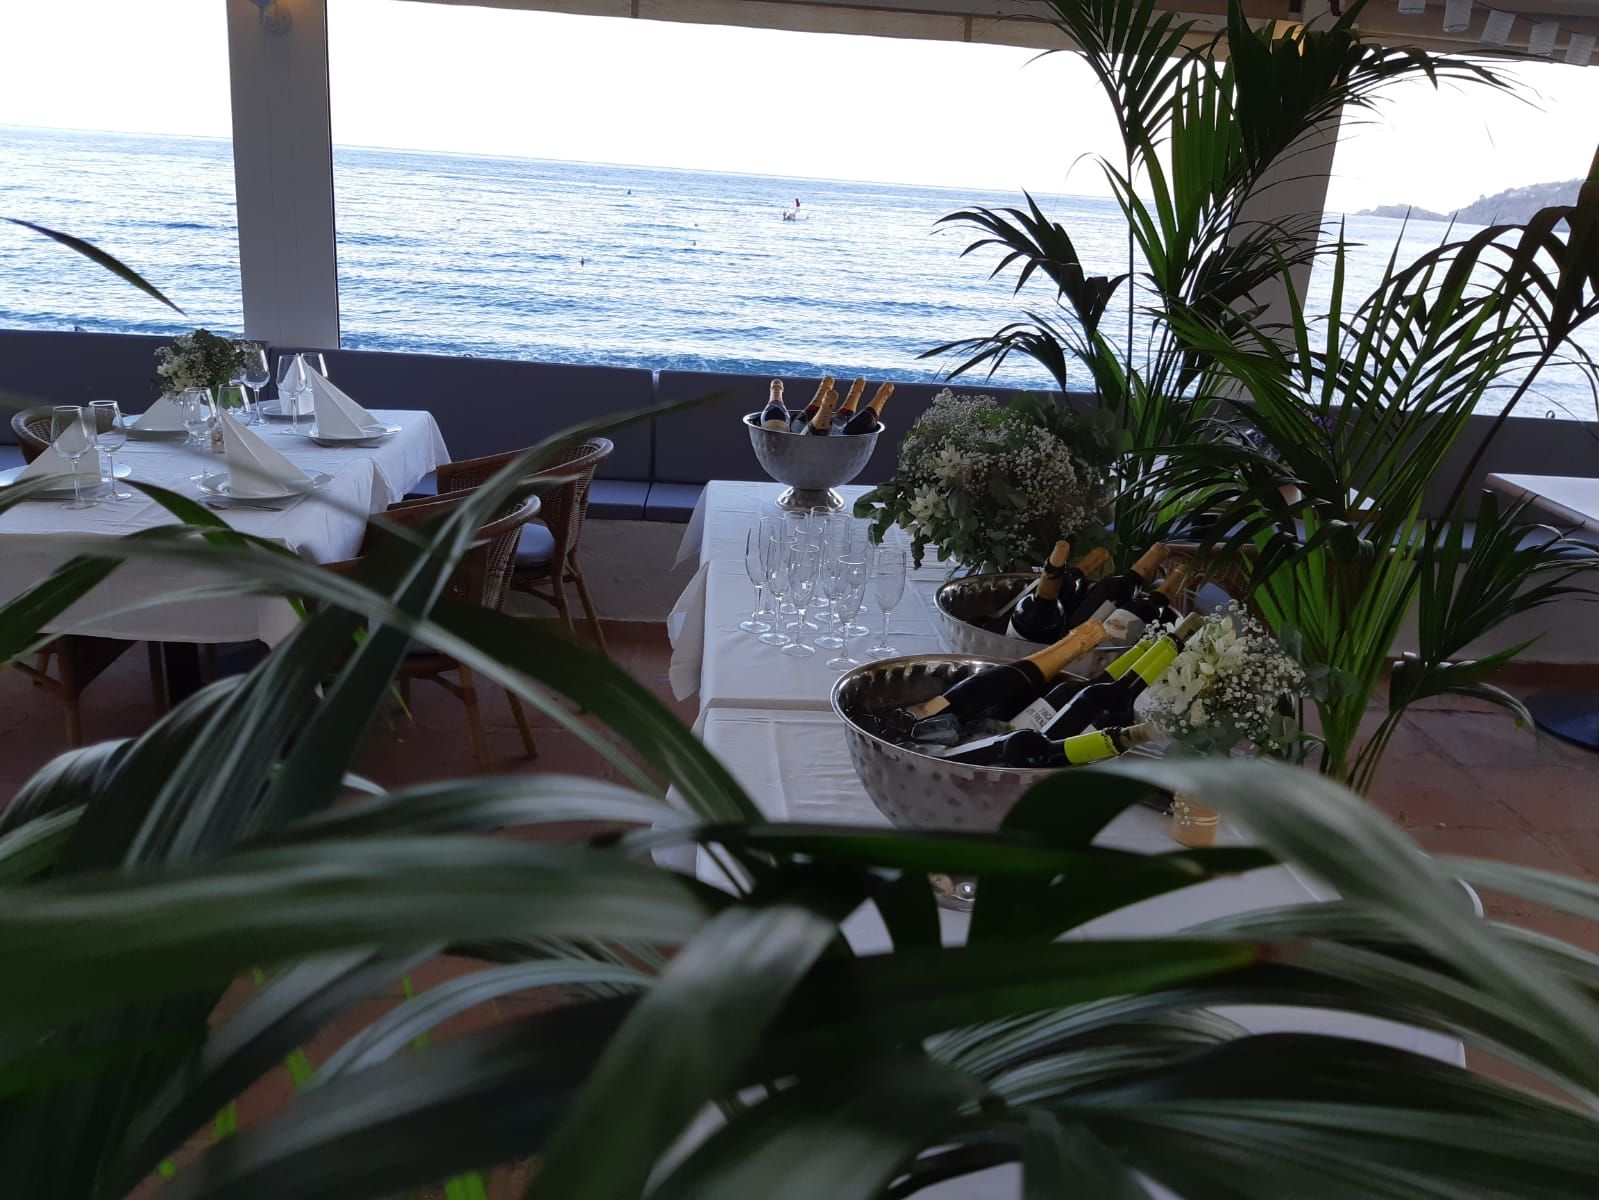 Foto 18 de Restaurante de cocina mediterránea en  | El Balcón de Cotobro